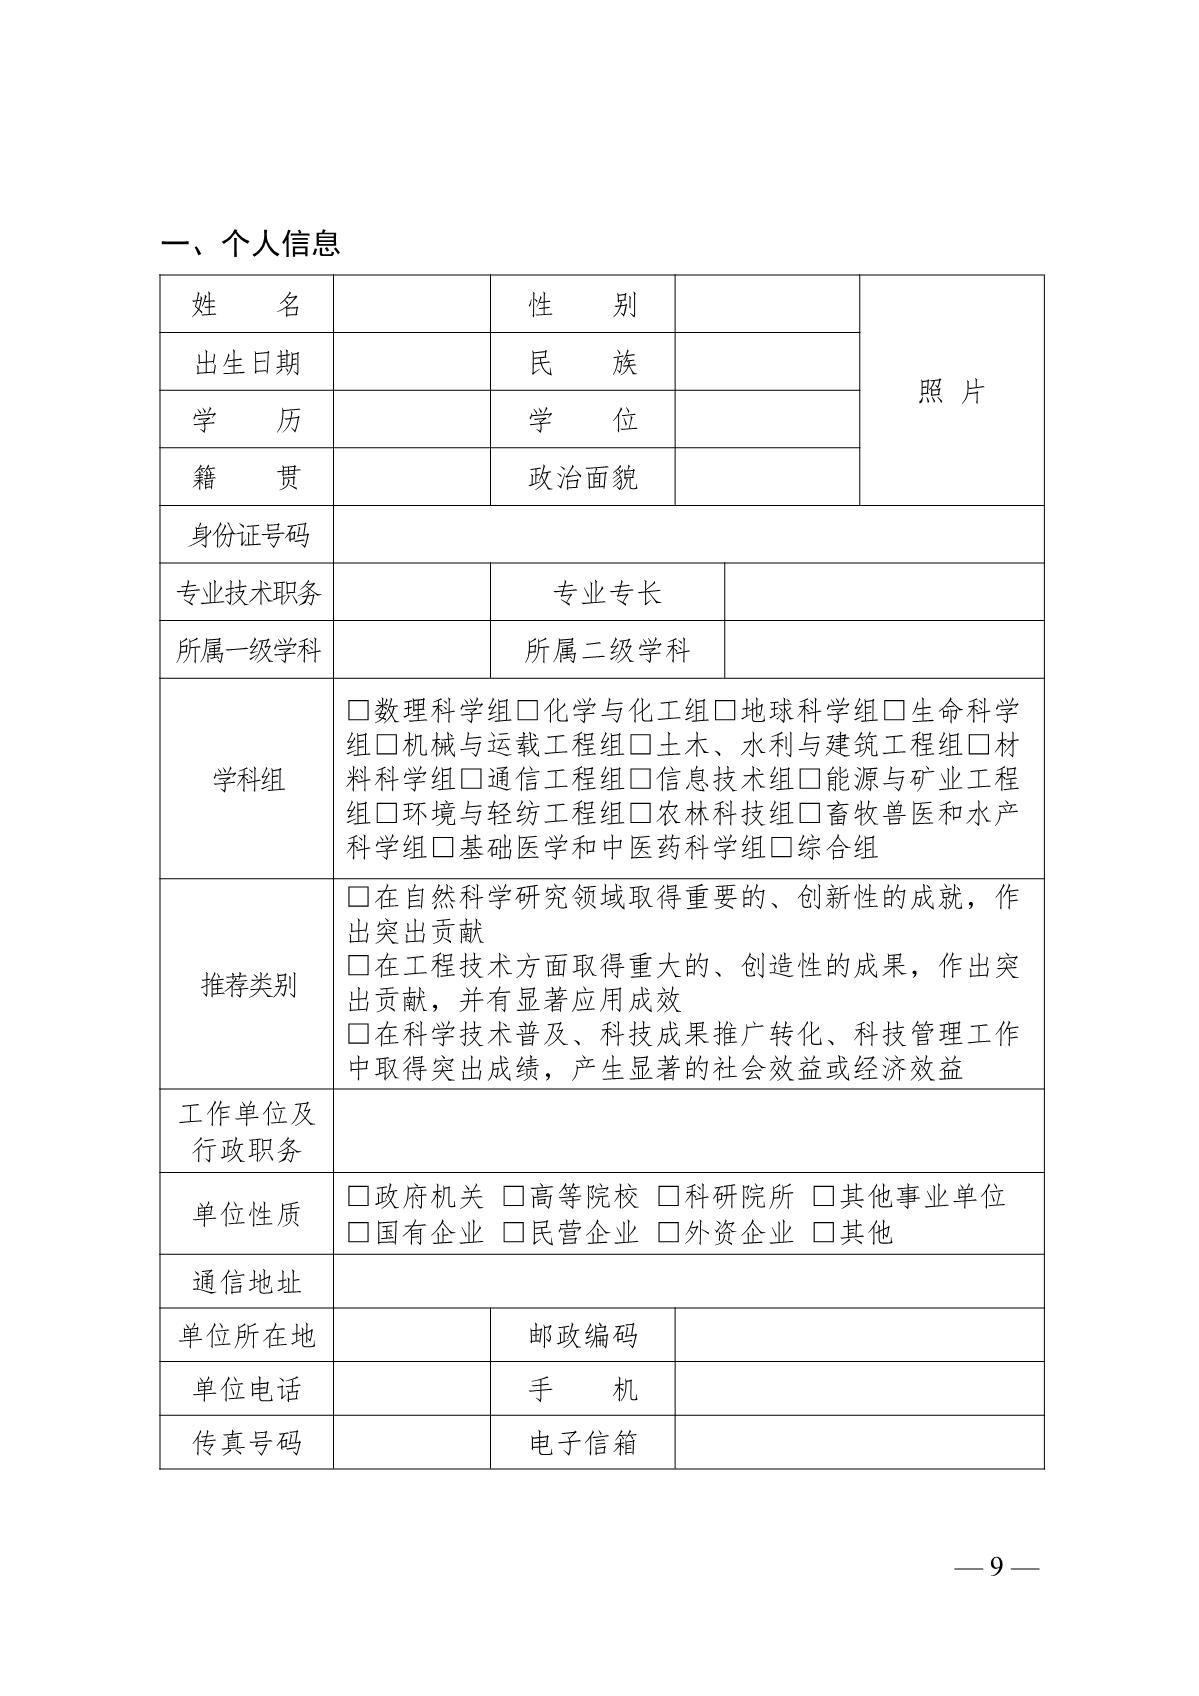 关于开展第十七届江苏省青年科技奖候选人推荐与评选工作的预通知_9.JPG